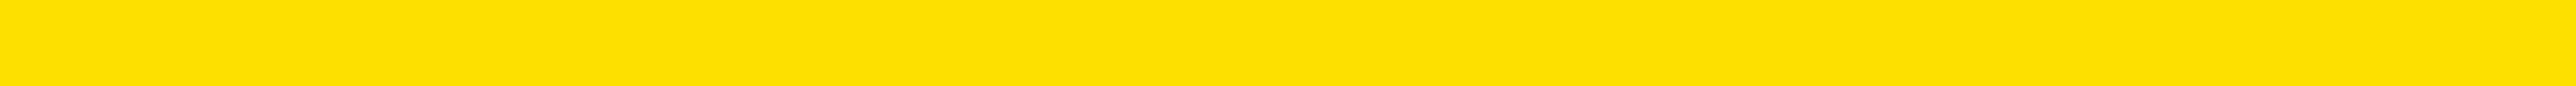 Бордюр Керамин Соло 8 желтый 2x60